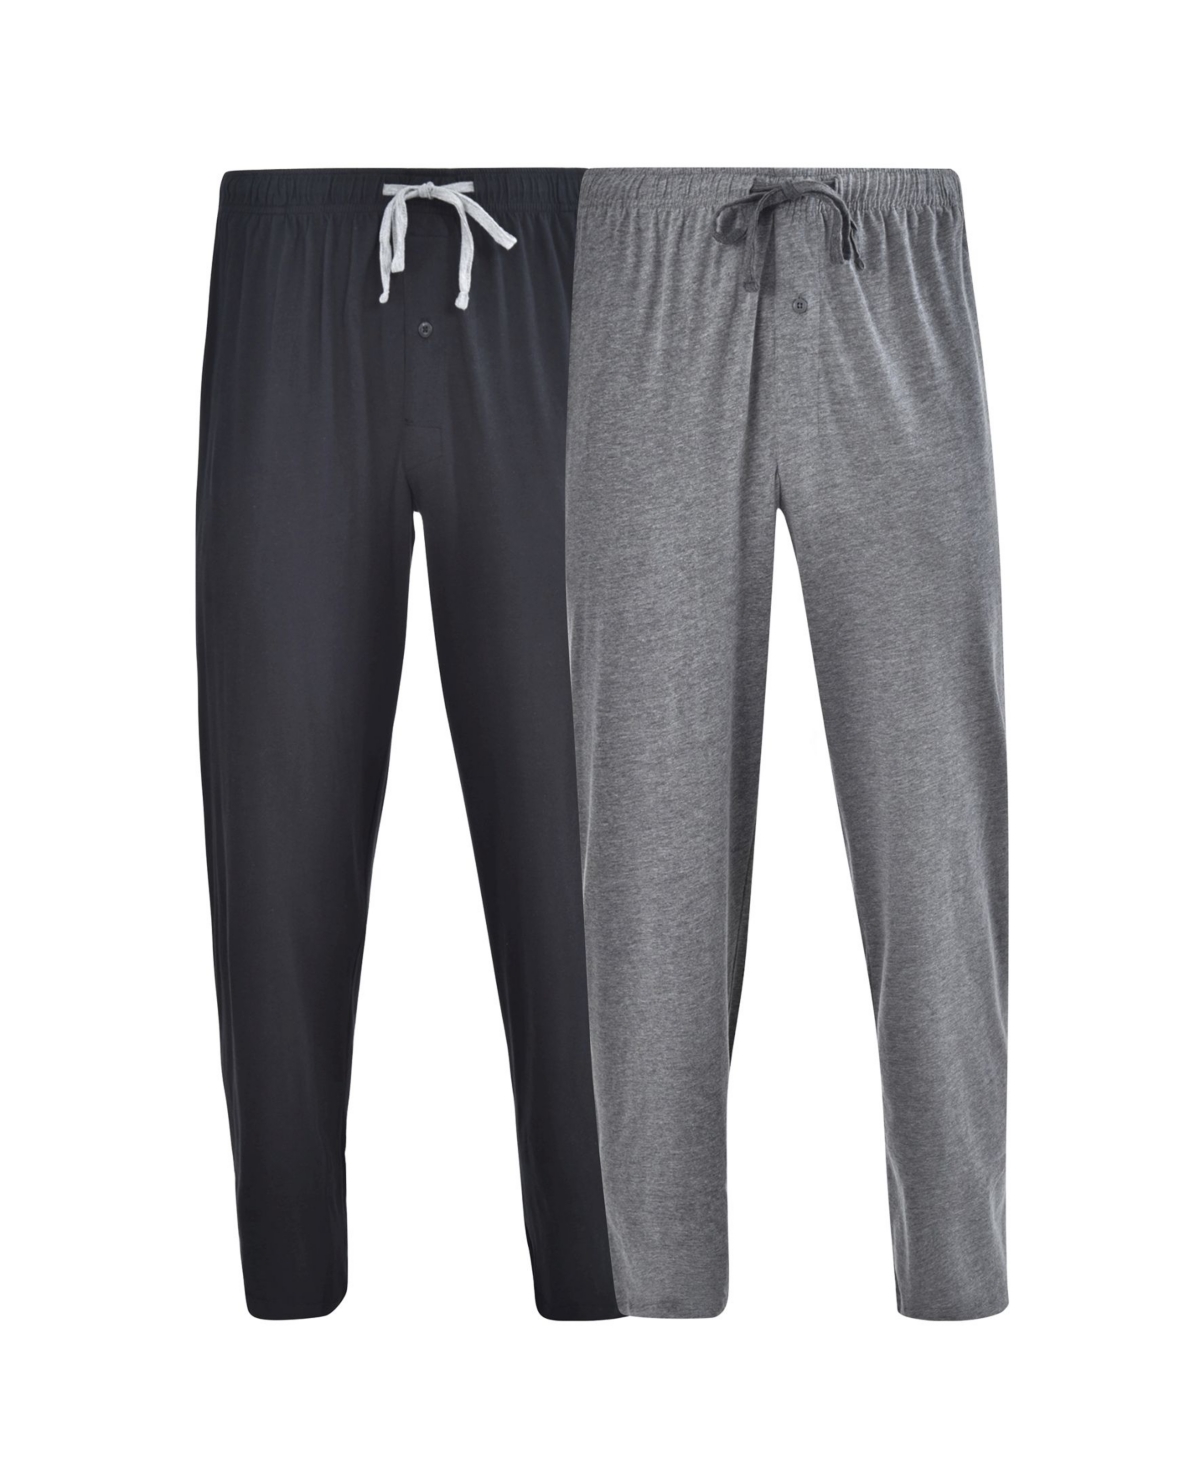 Hanes Men's Knit Sleep Pant, 2 Pack - Grey